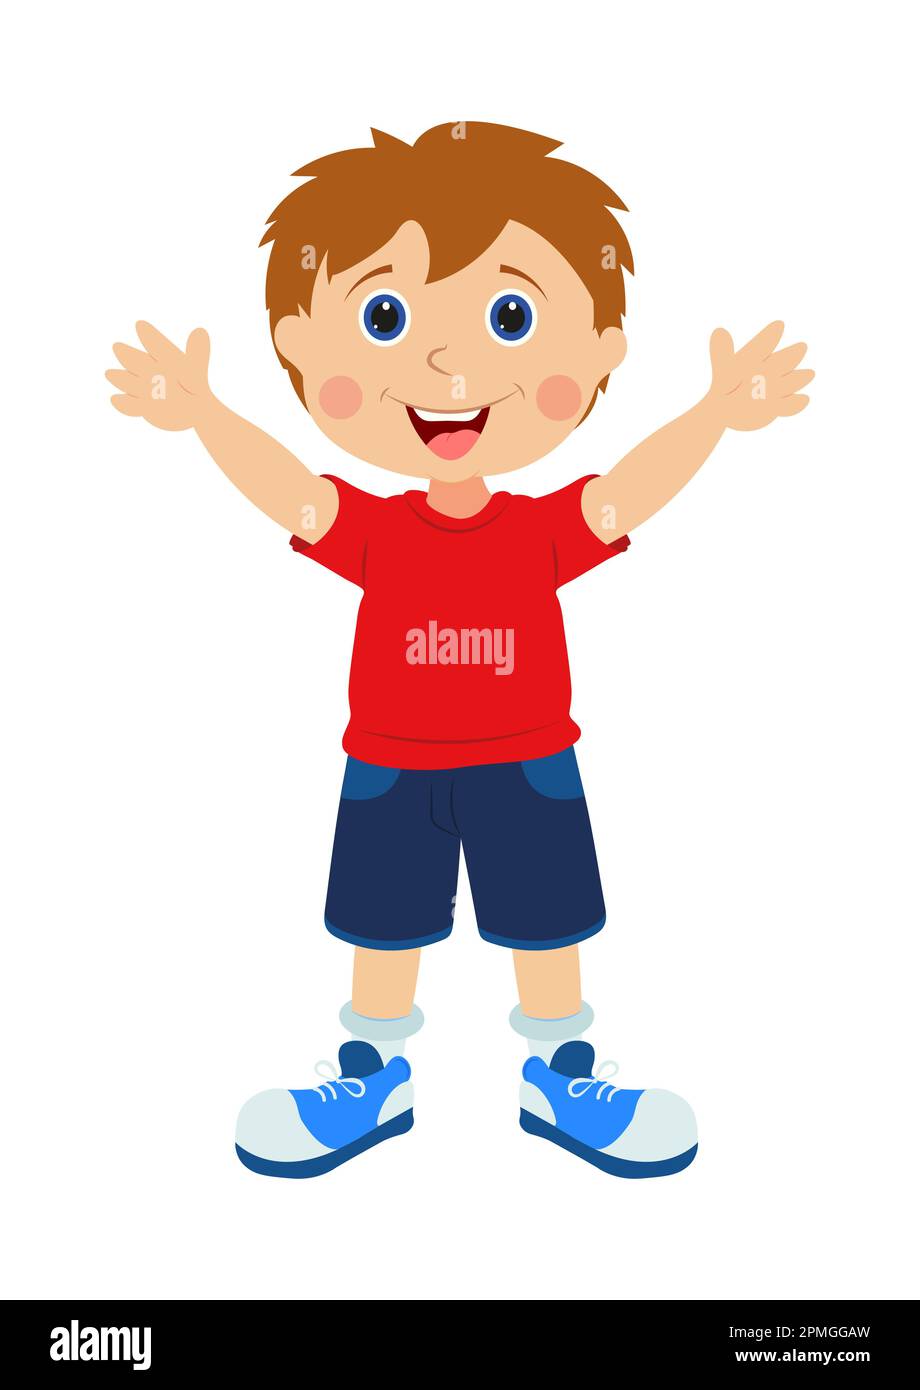 Happy Kid. Vector Happy Child Cartoon Character Stock Vector Image ...